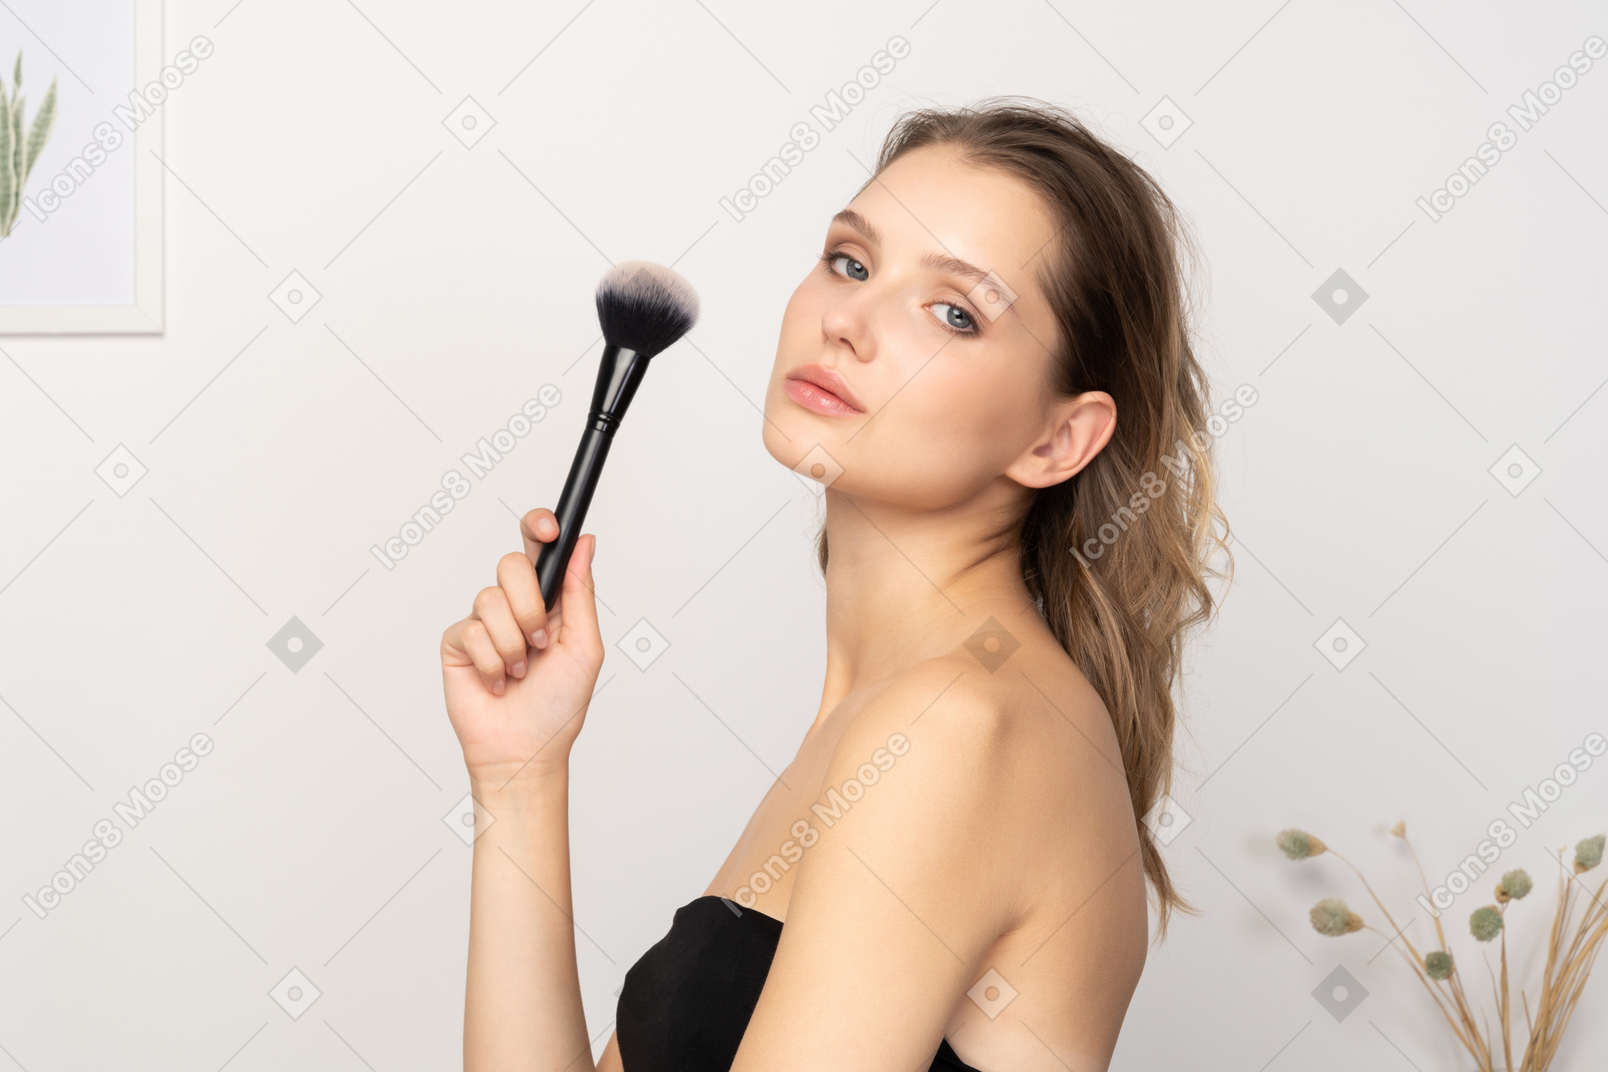 Vista lateral de una mujer joven sensual sosteniendo un pincel de maquillaje y mirando a la cámara